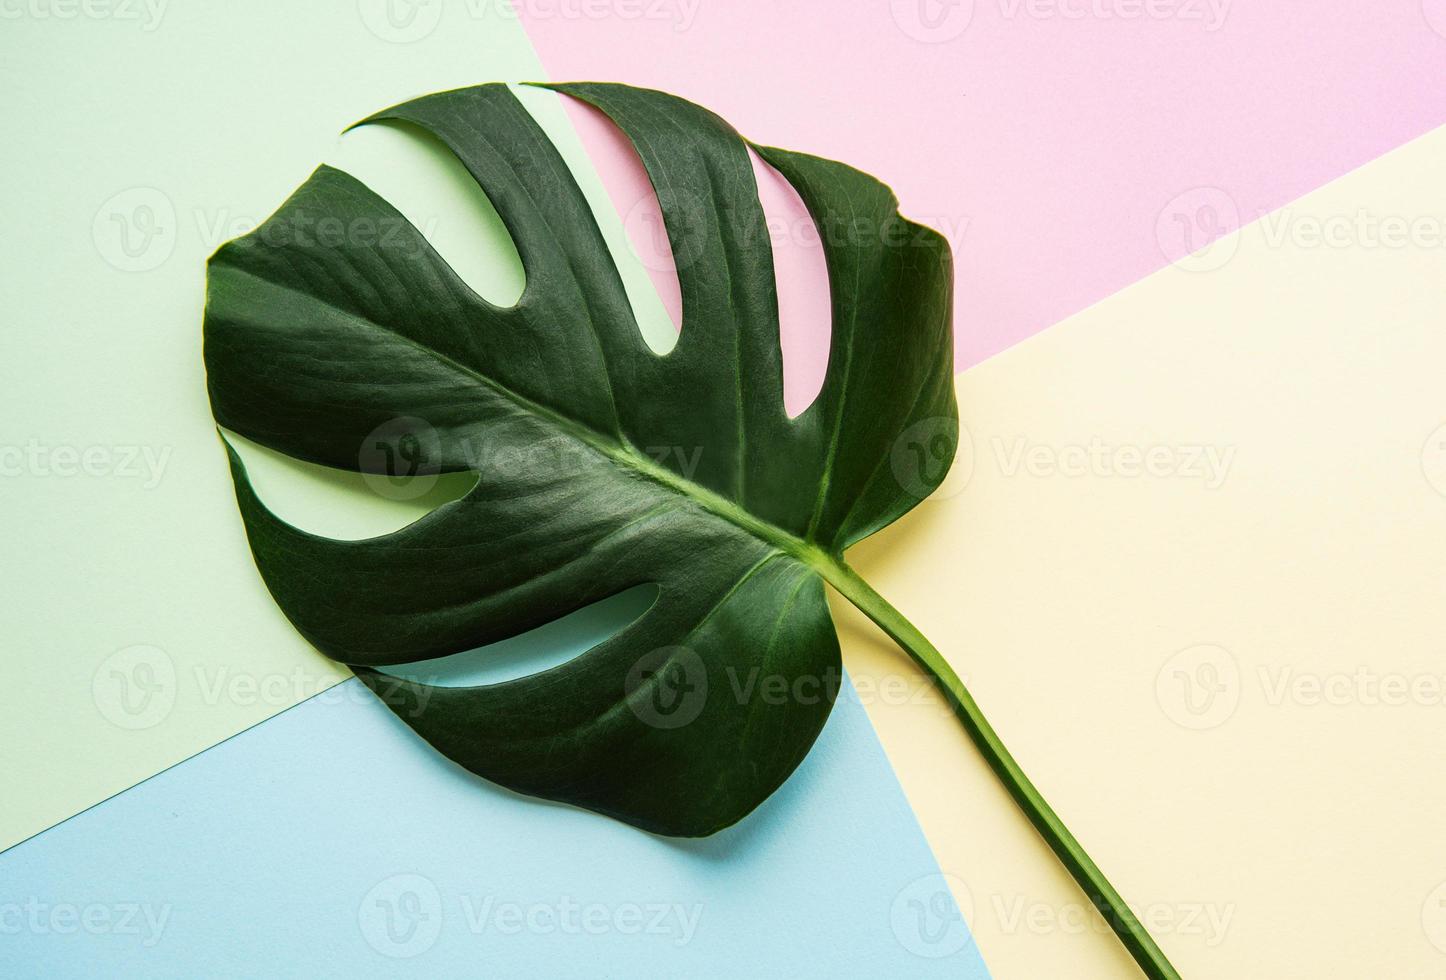 groen blad op pastelachtergrond foto